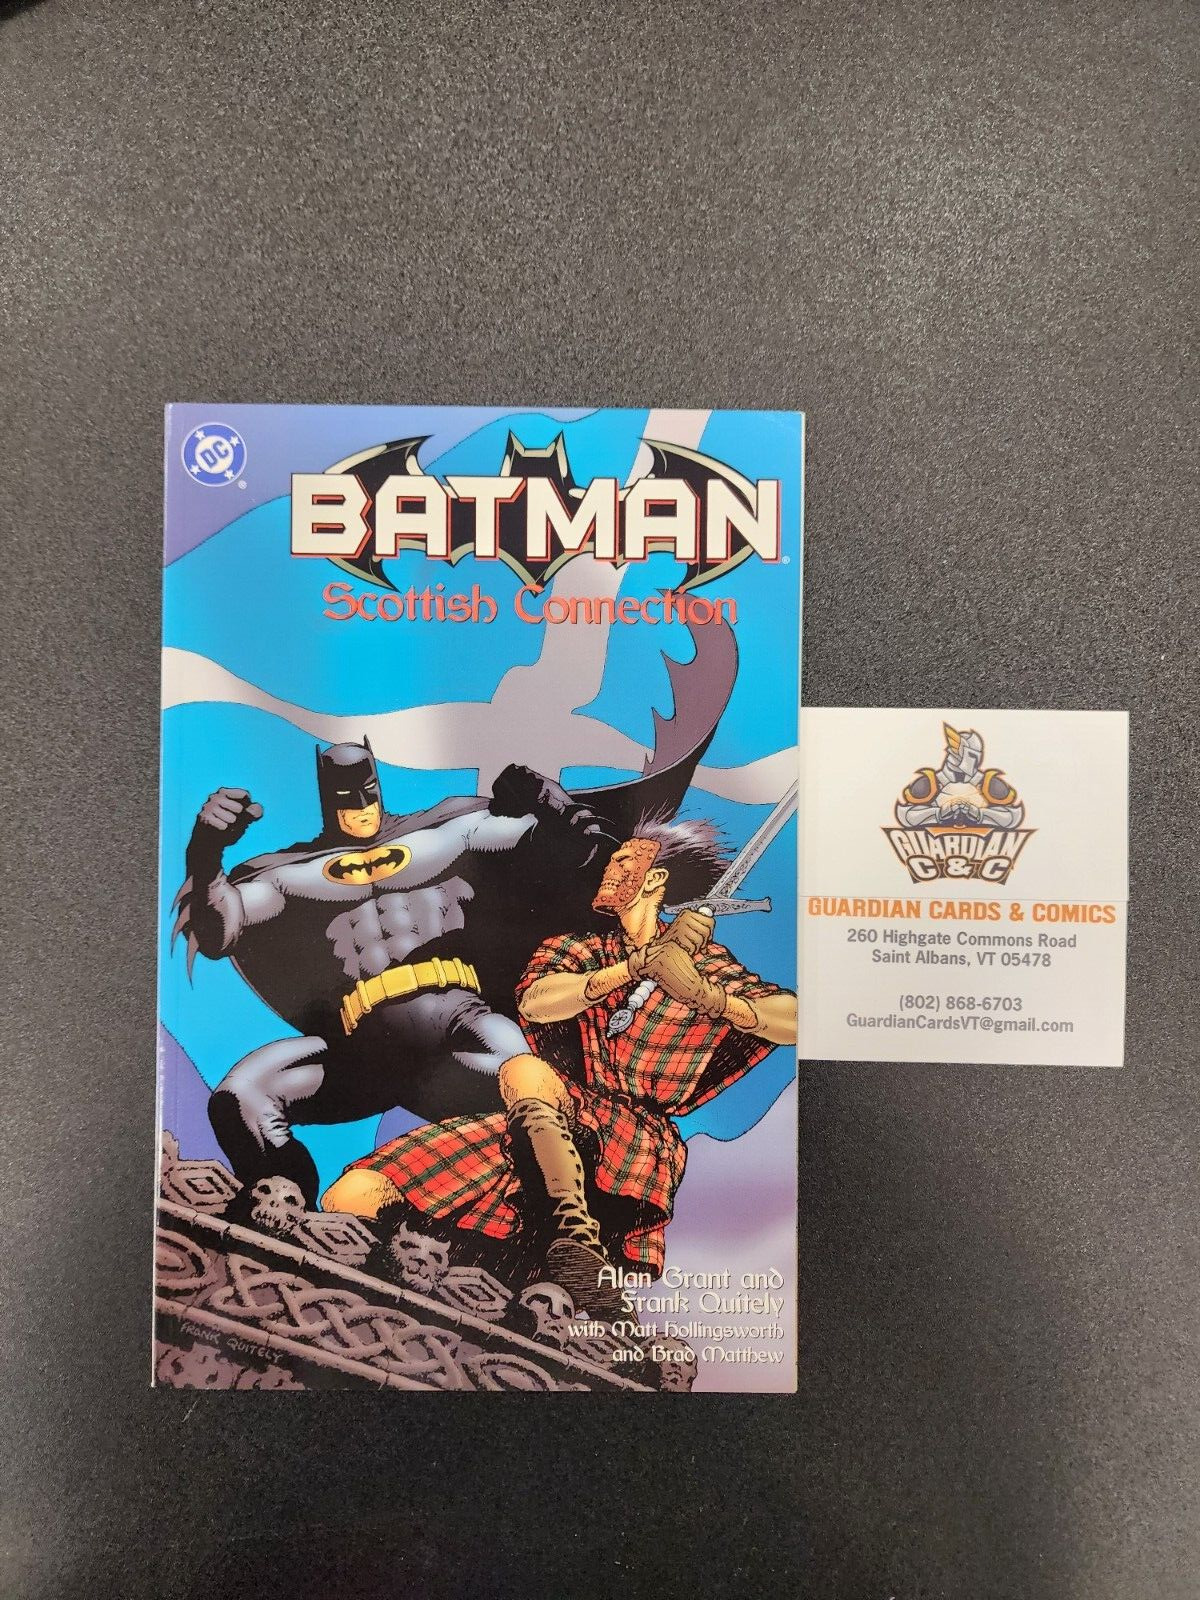 Batman: Scottish Connection (DC Comics, 1998) One-Shot Graphic Novel